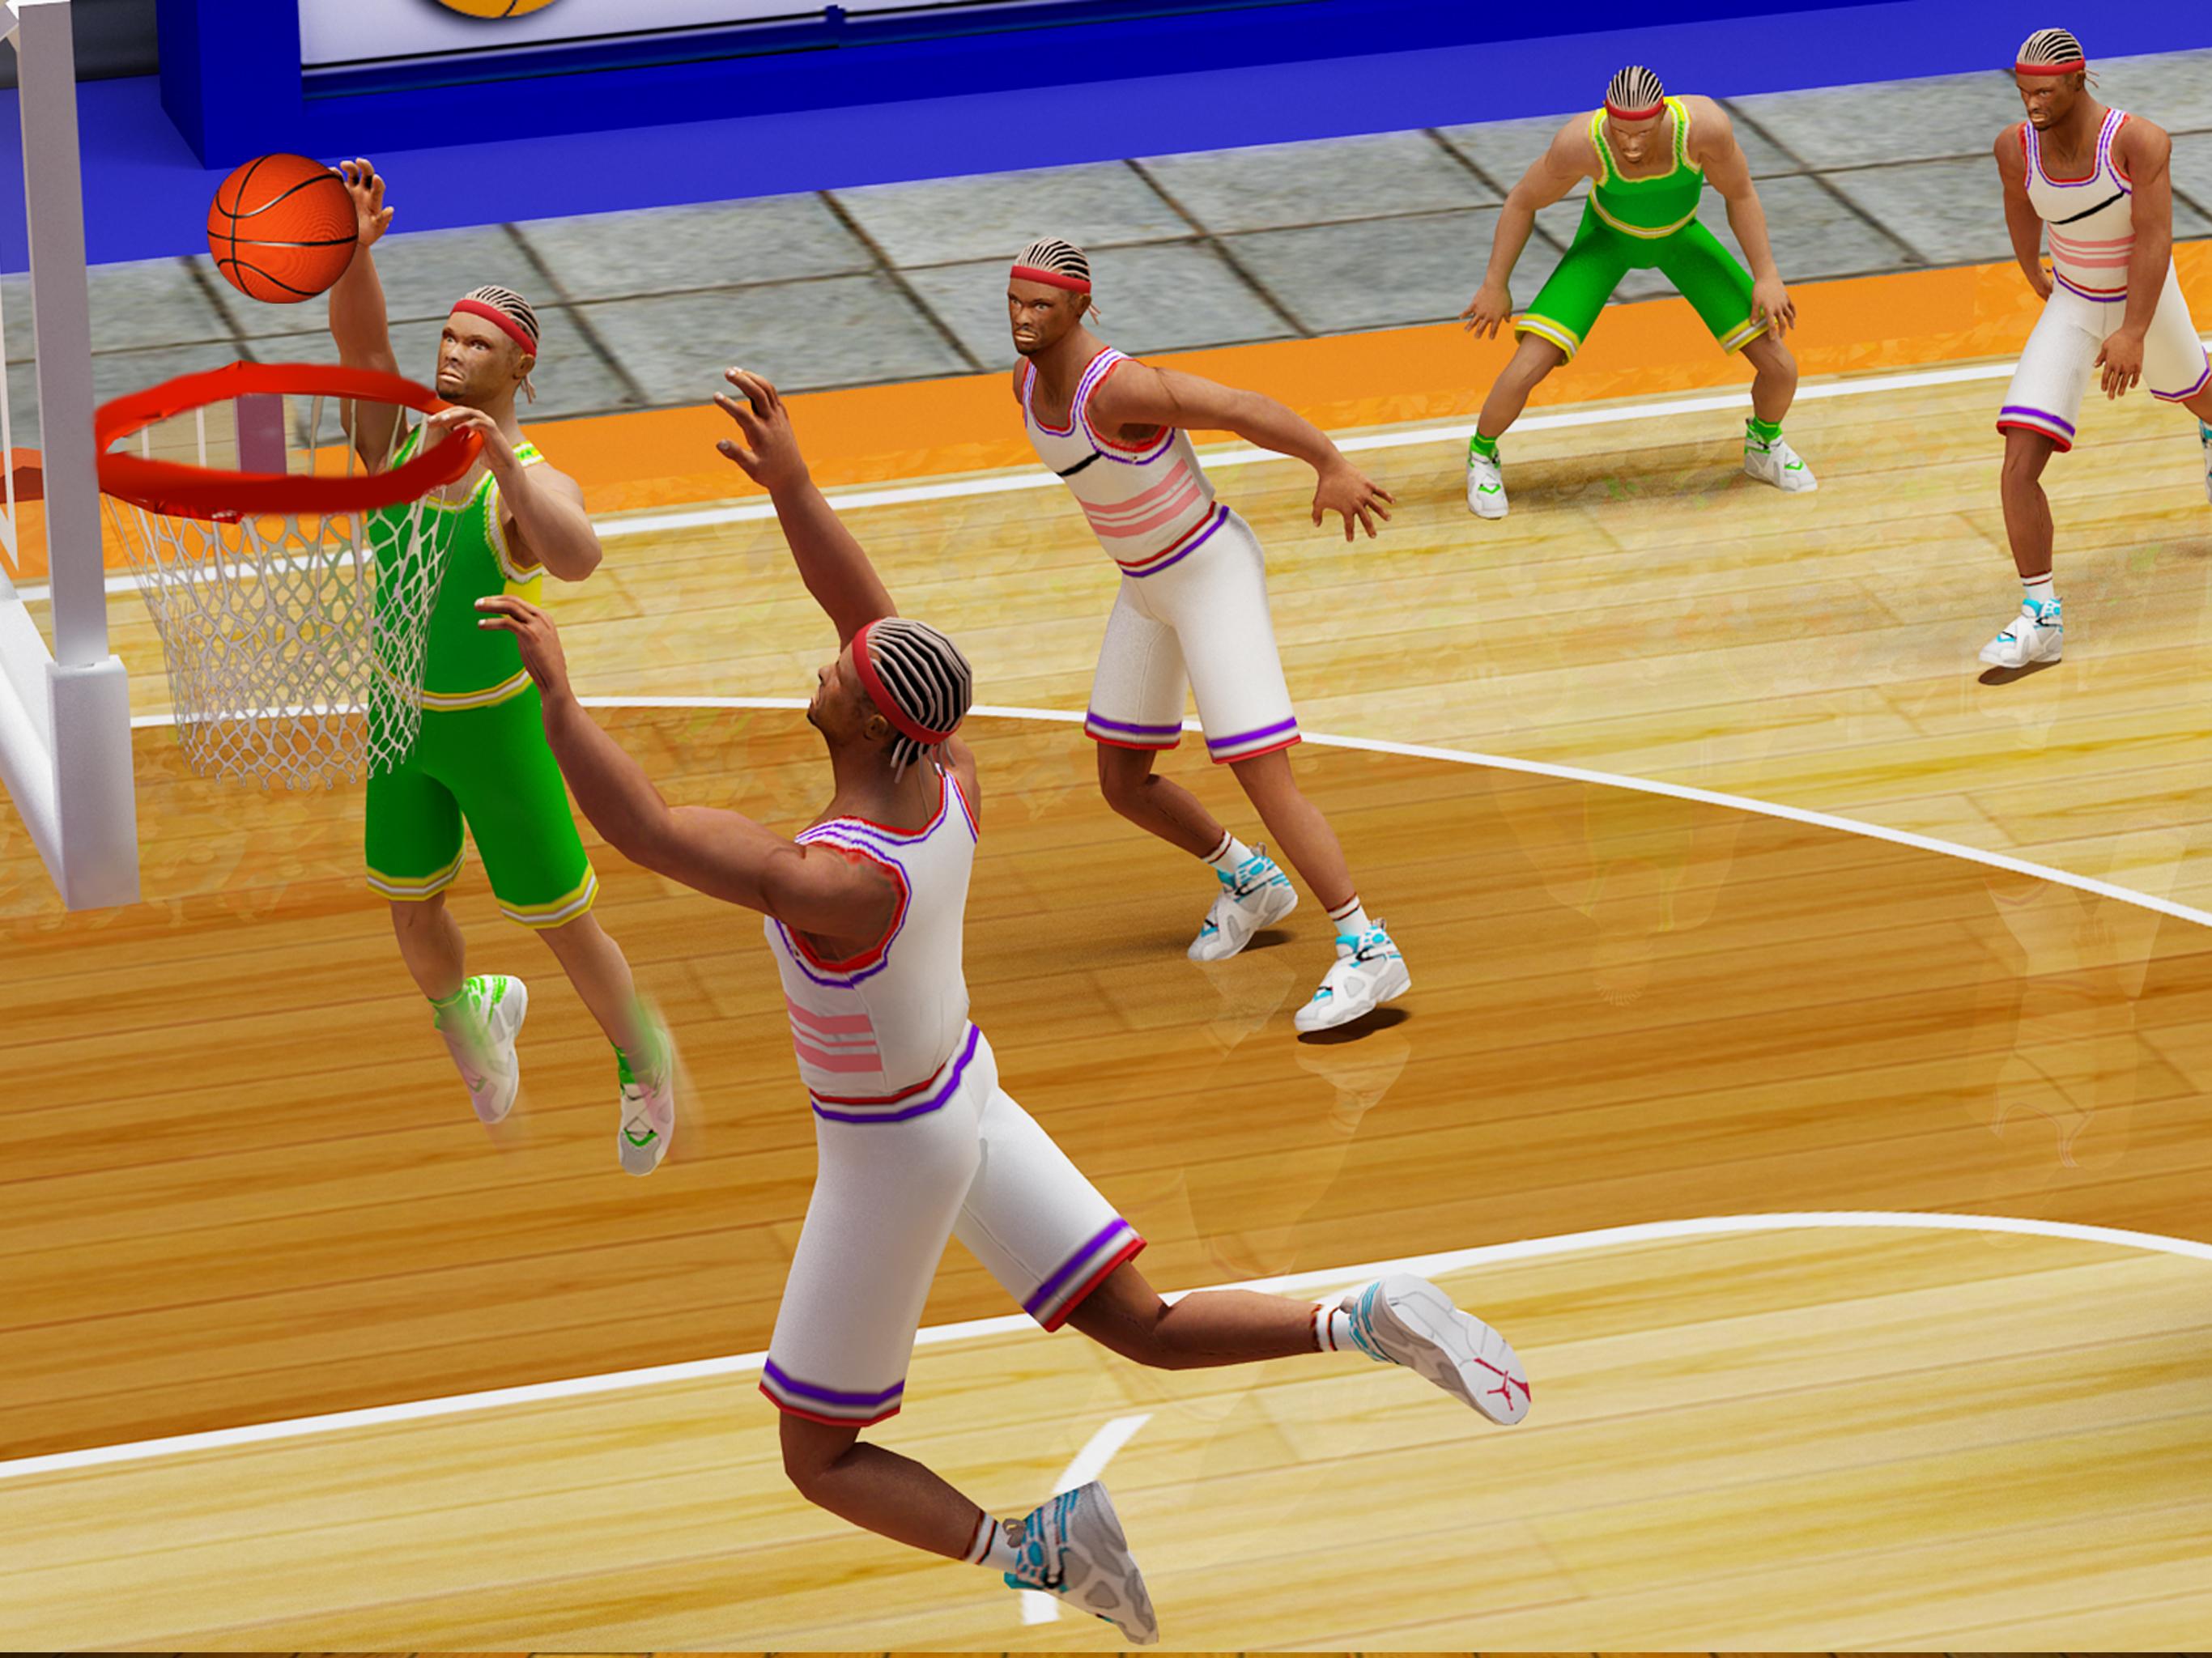 Мини игры баскетбол. Баскетбол игра Hoop. Воздушный баскетбол игра. Звезда баскетбола игра. Баскетбольные игры по 4 человека.